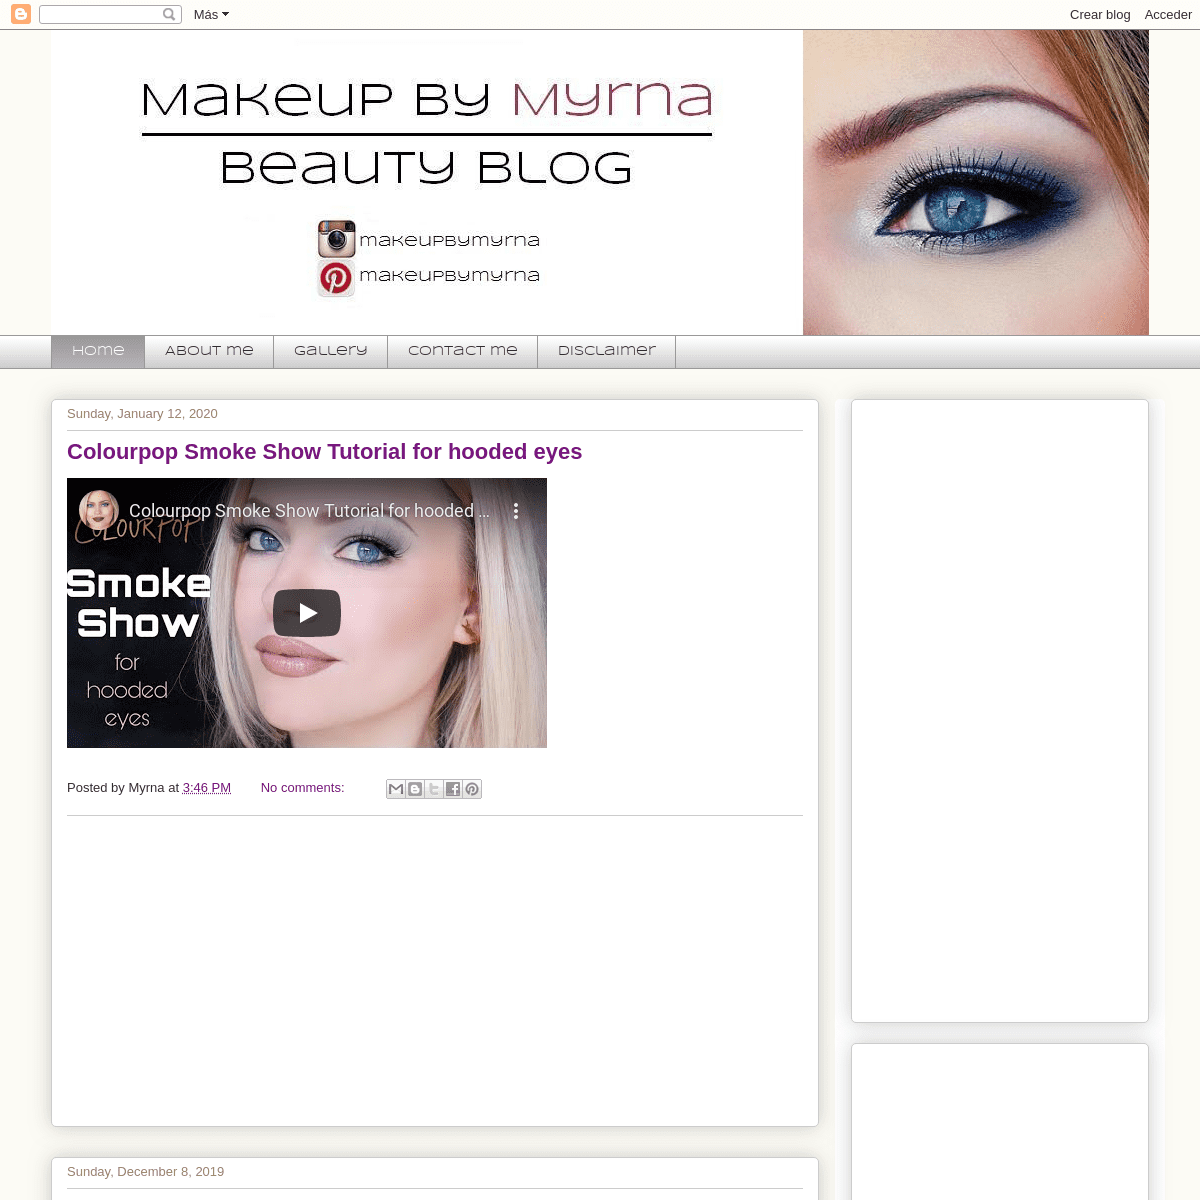 A complete backup of makeupbymyrna.blogspot.com